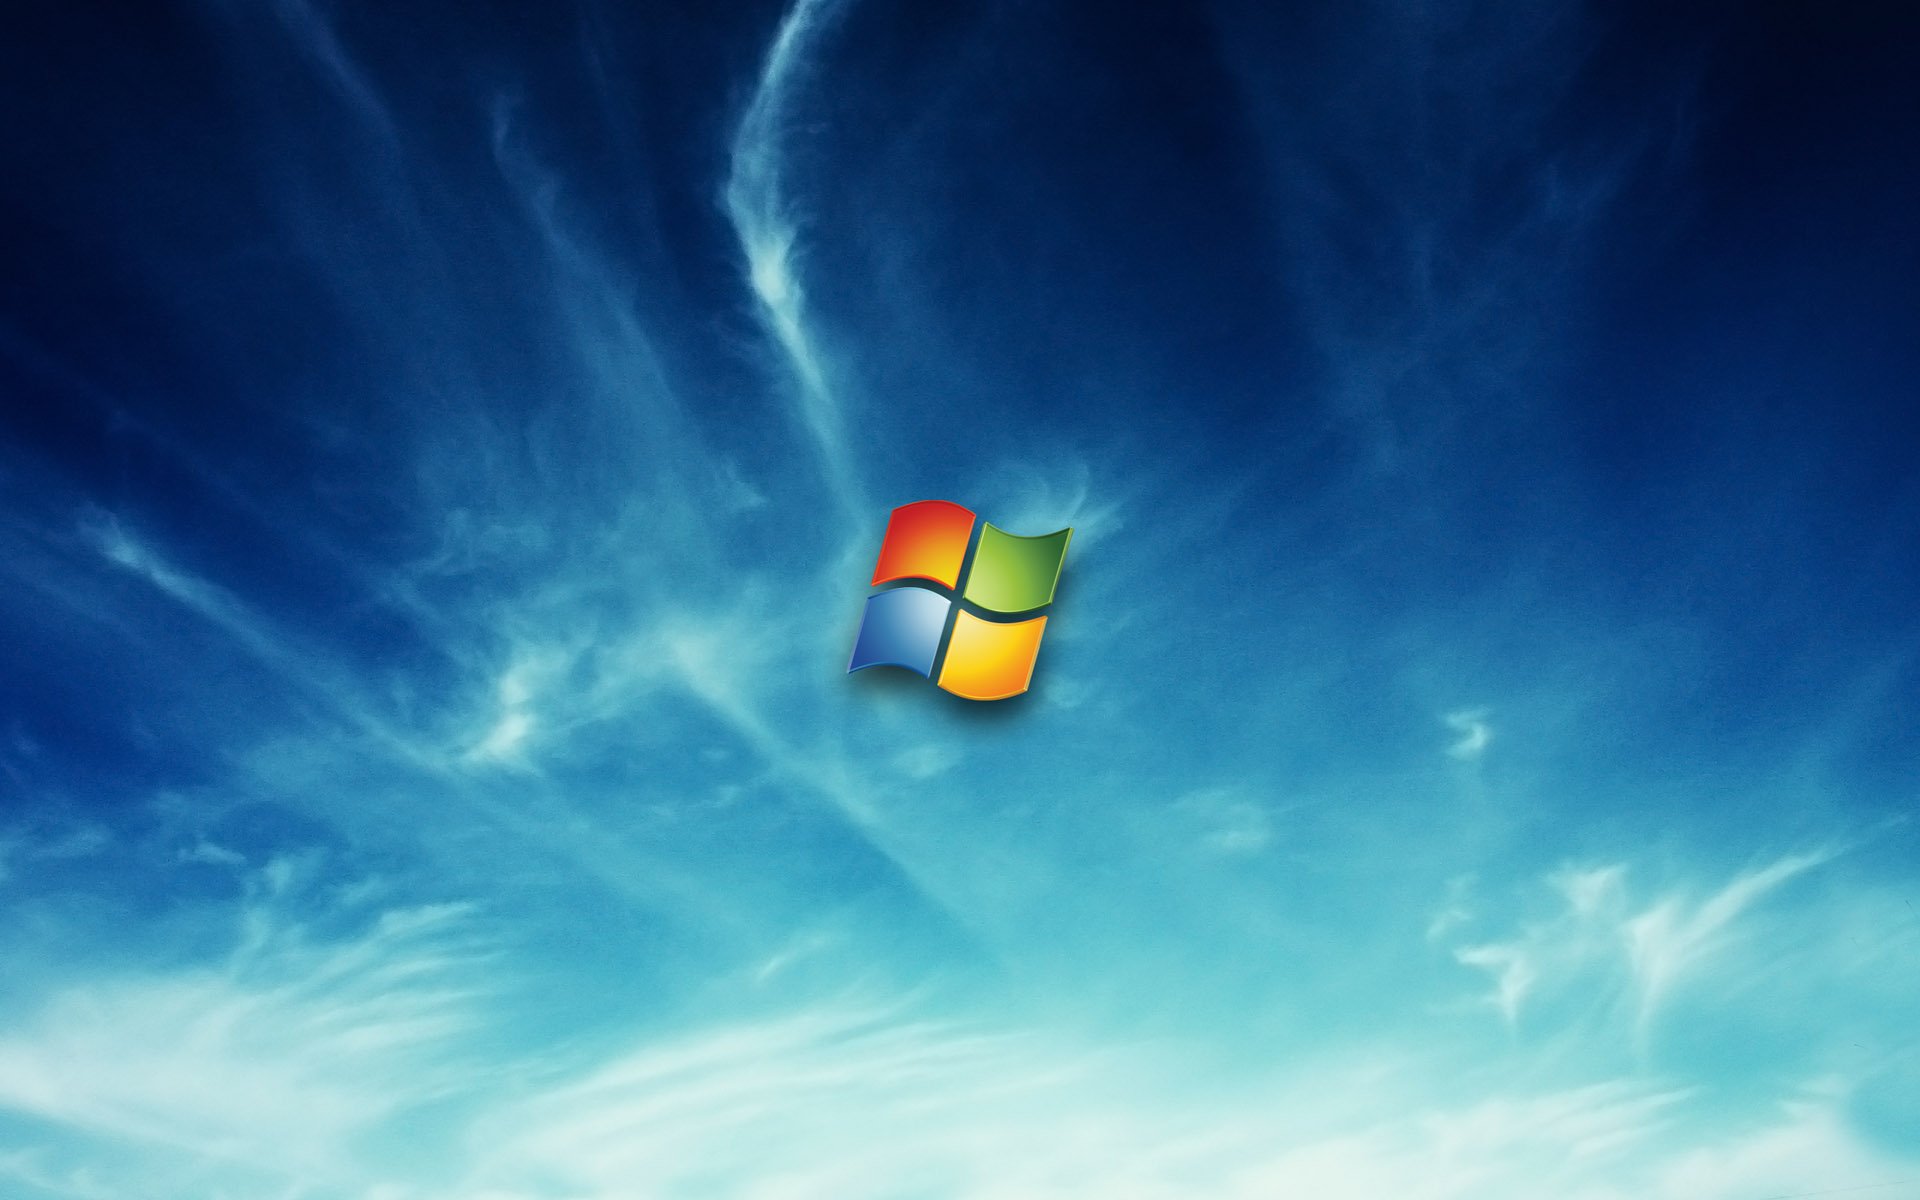 Windows 7 Wallpaper High Resolution